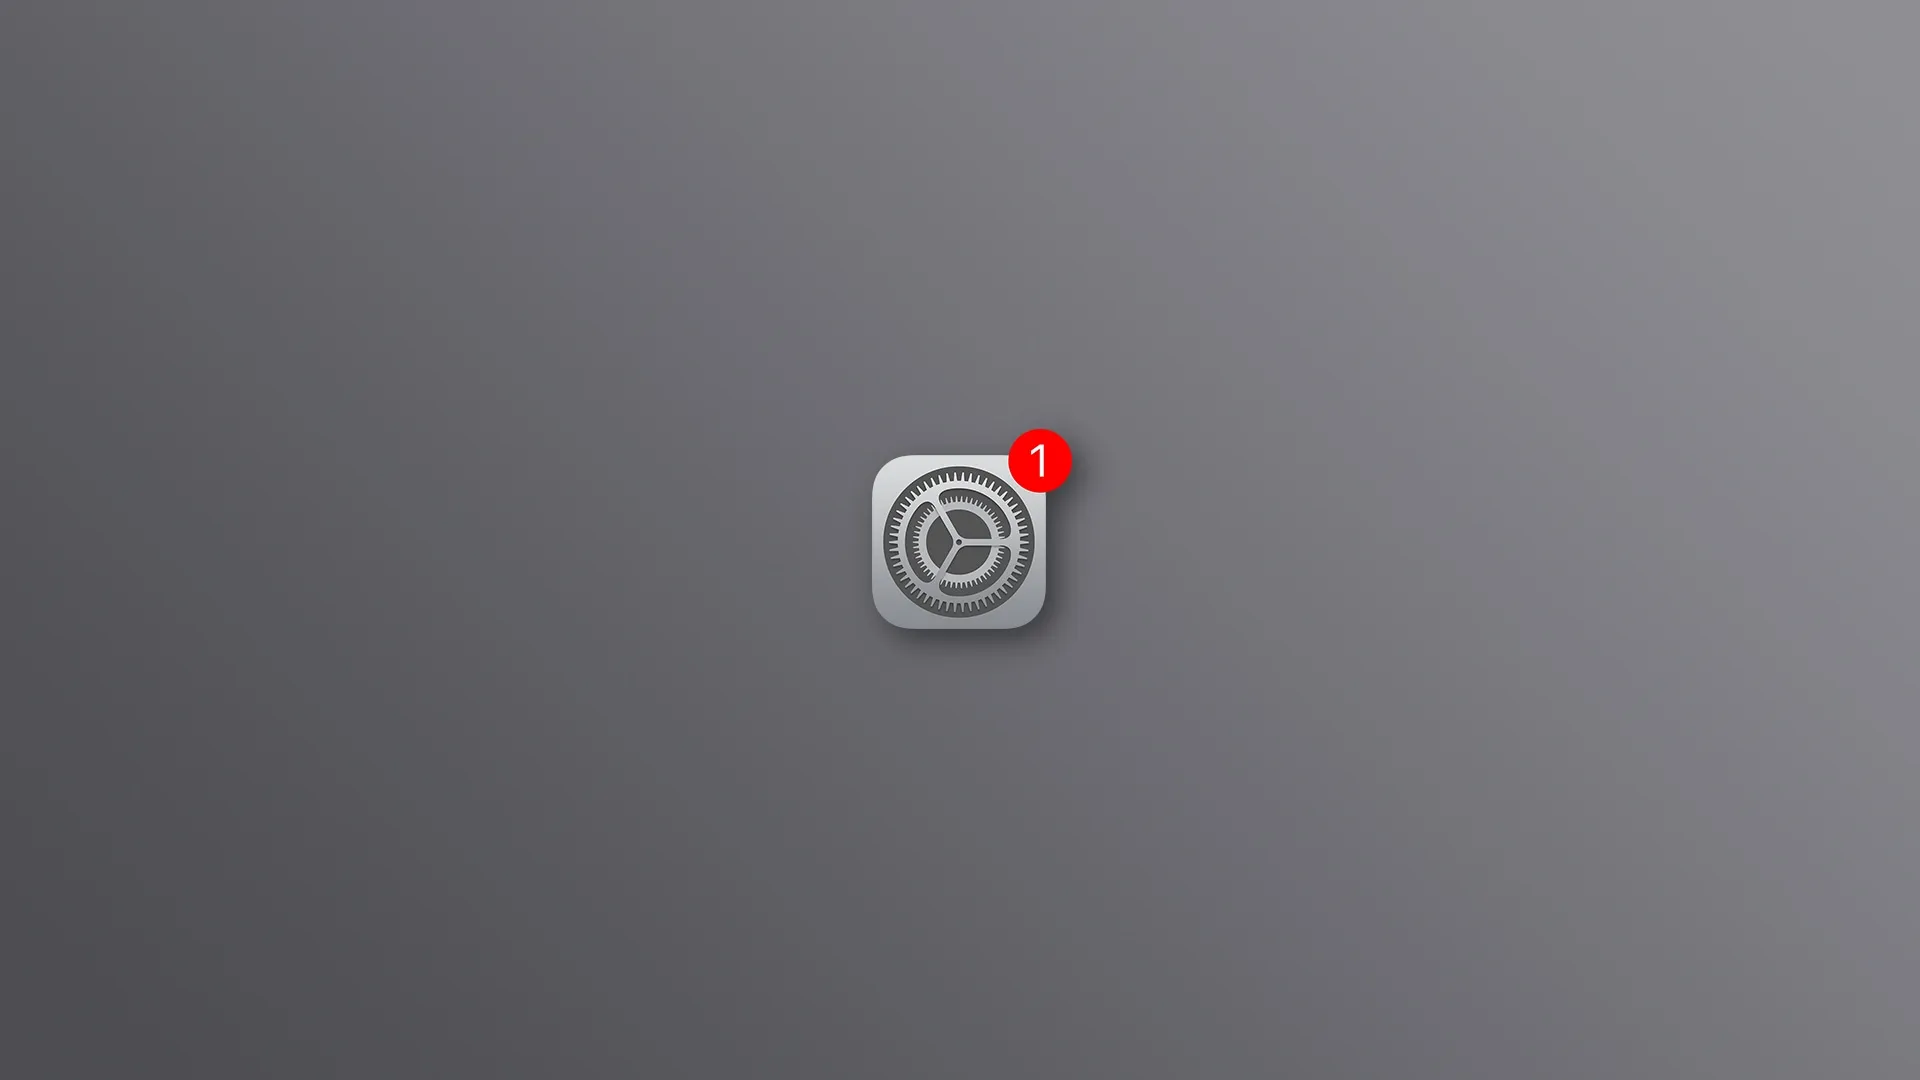 Das Einstellungssymbol des iPhones mit rotem Abzeichen vor grauem Hintergrund